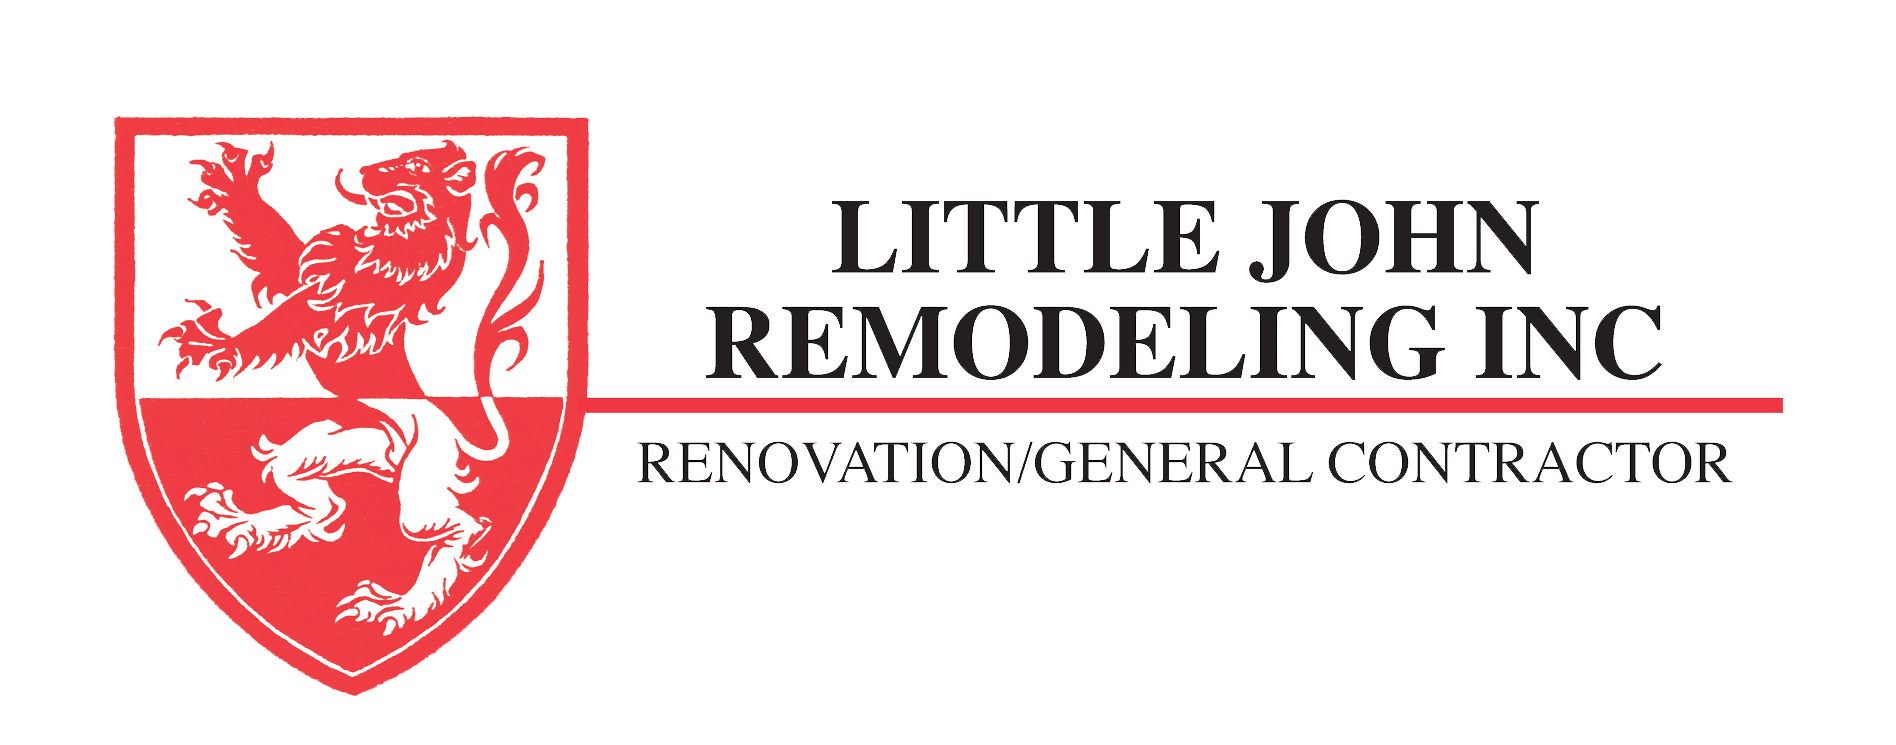 Little John Remodeling, Inc.